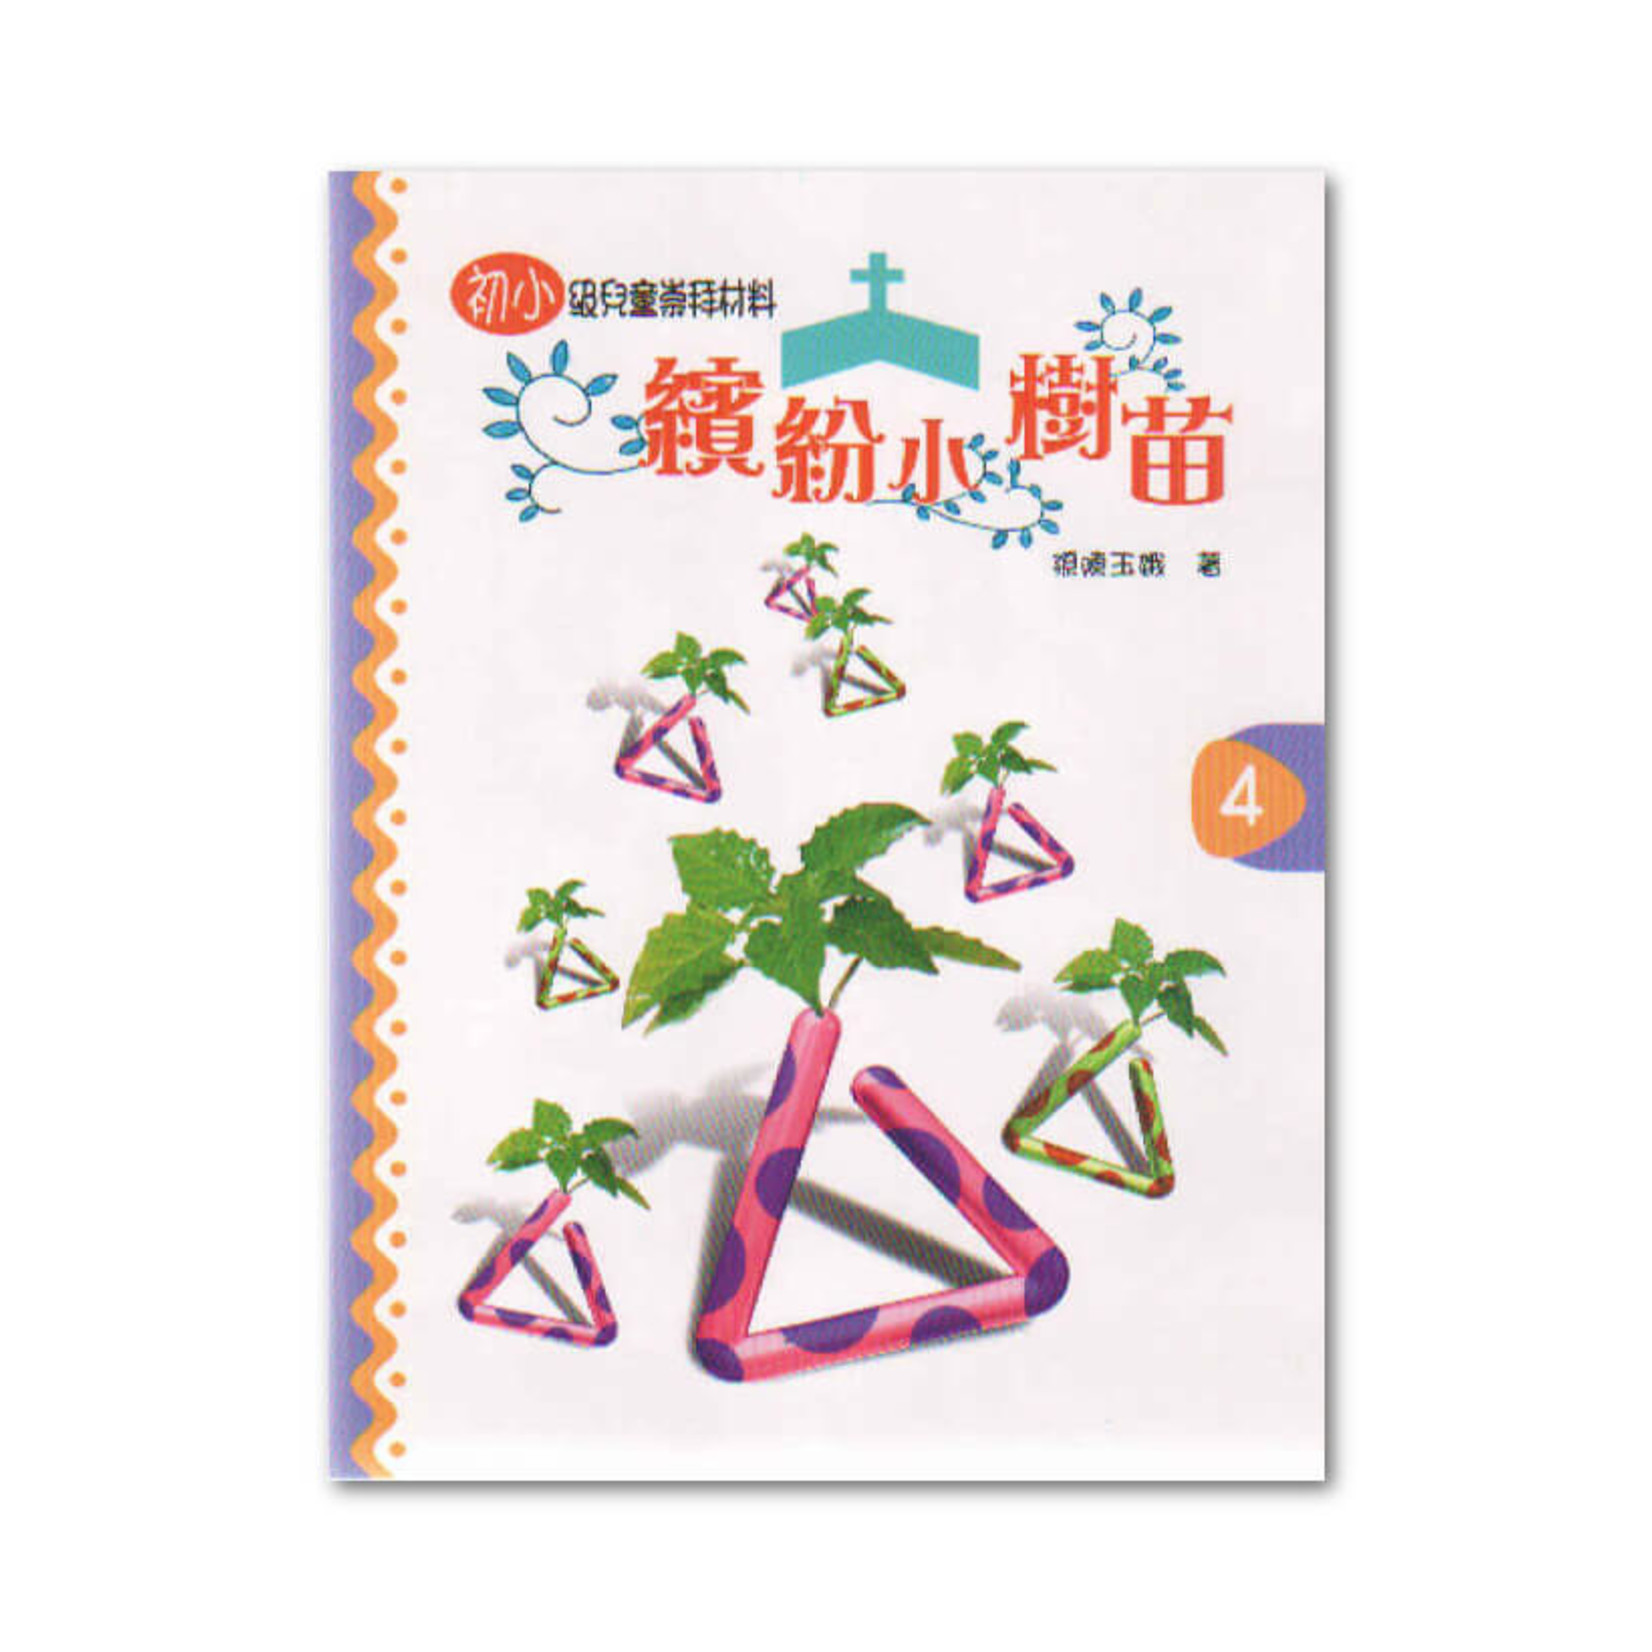 浸信會 Chinese Baptist Press 繽紛小樹苗：兒童崇拜材料（初小級）第4冊